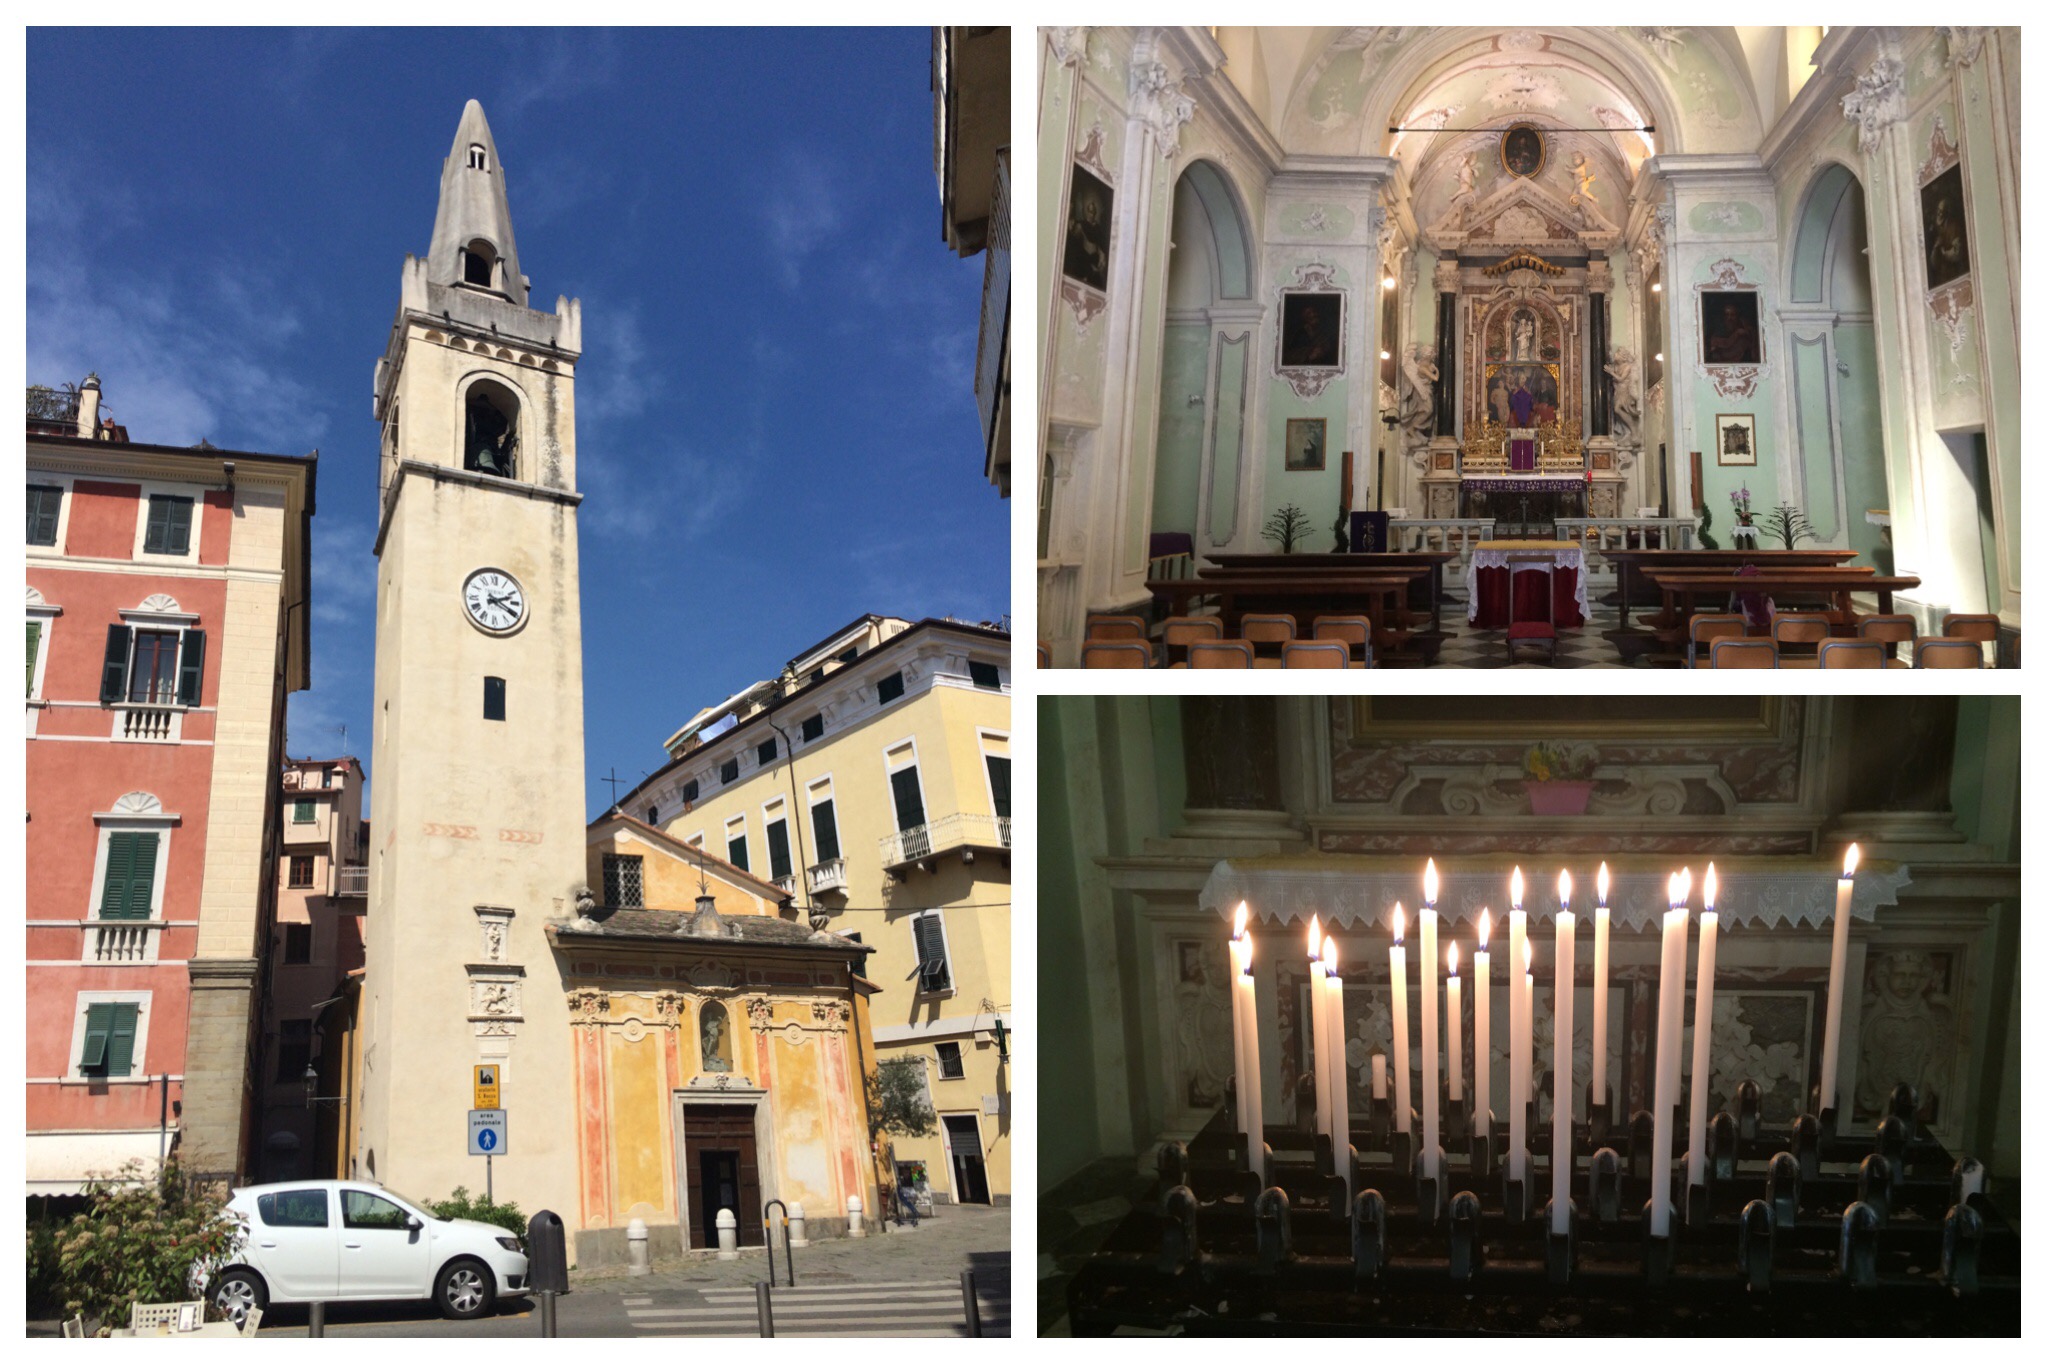 Liguria - Lerici San Rocco chapel